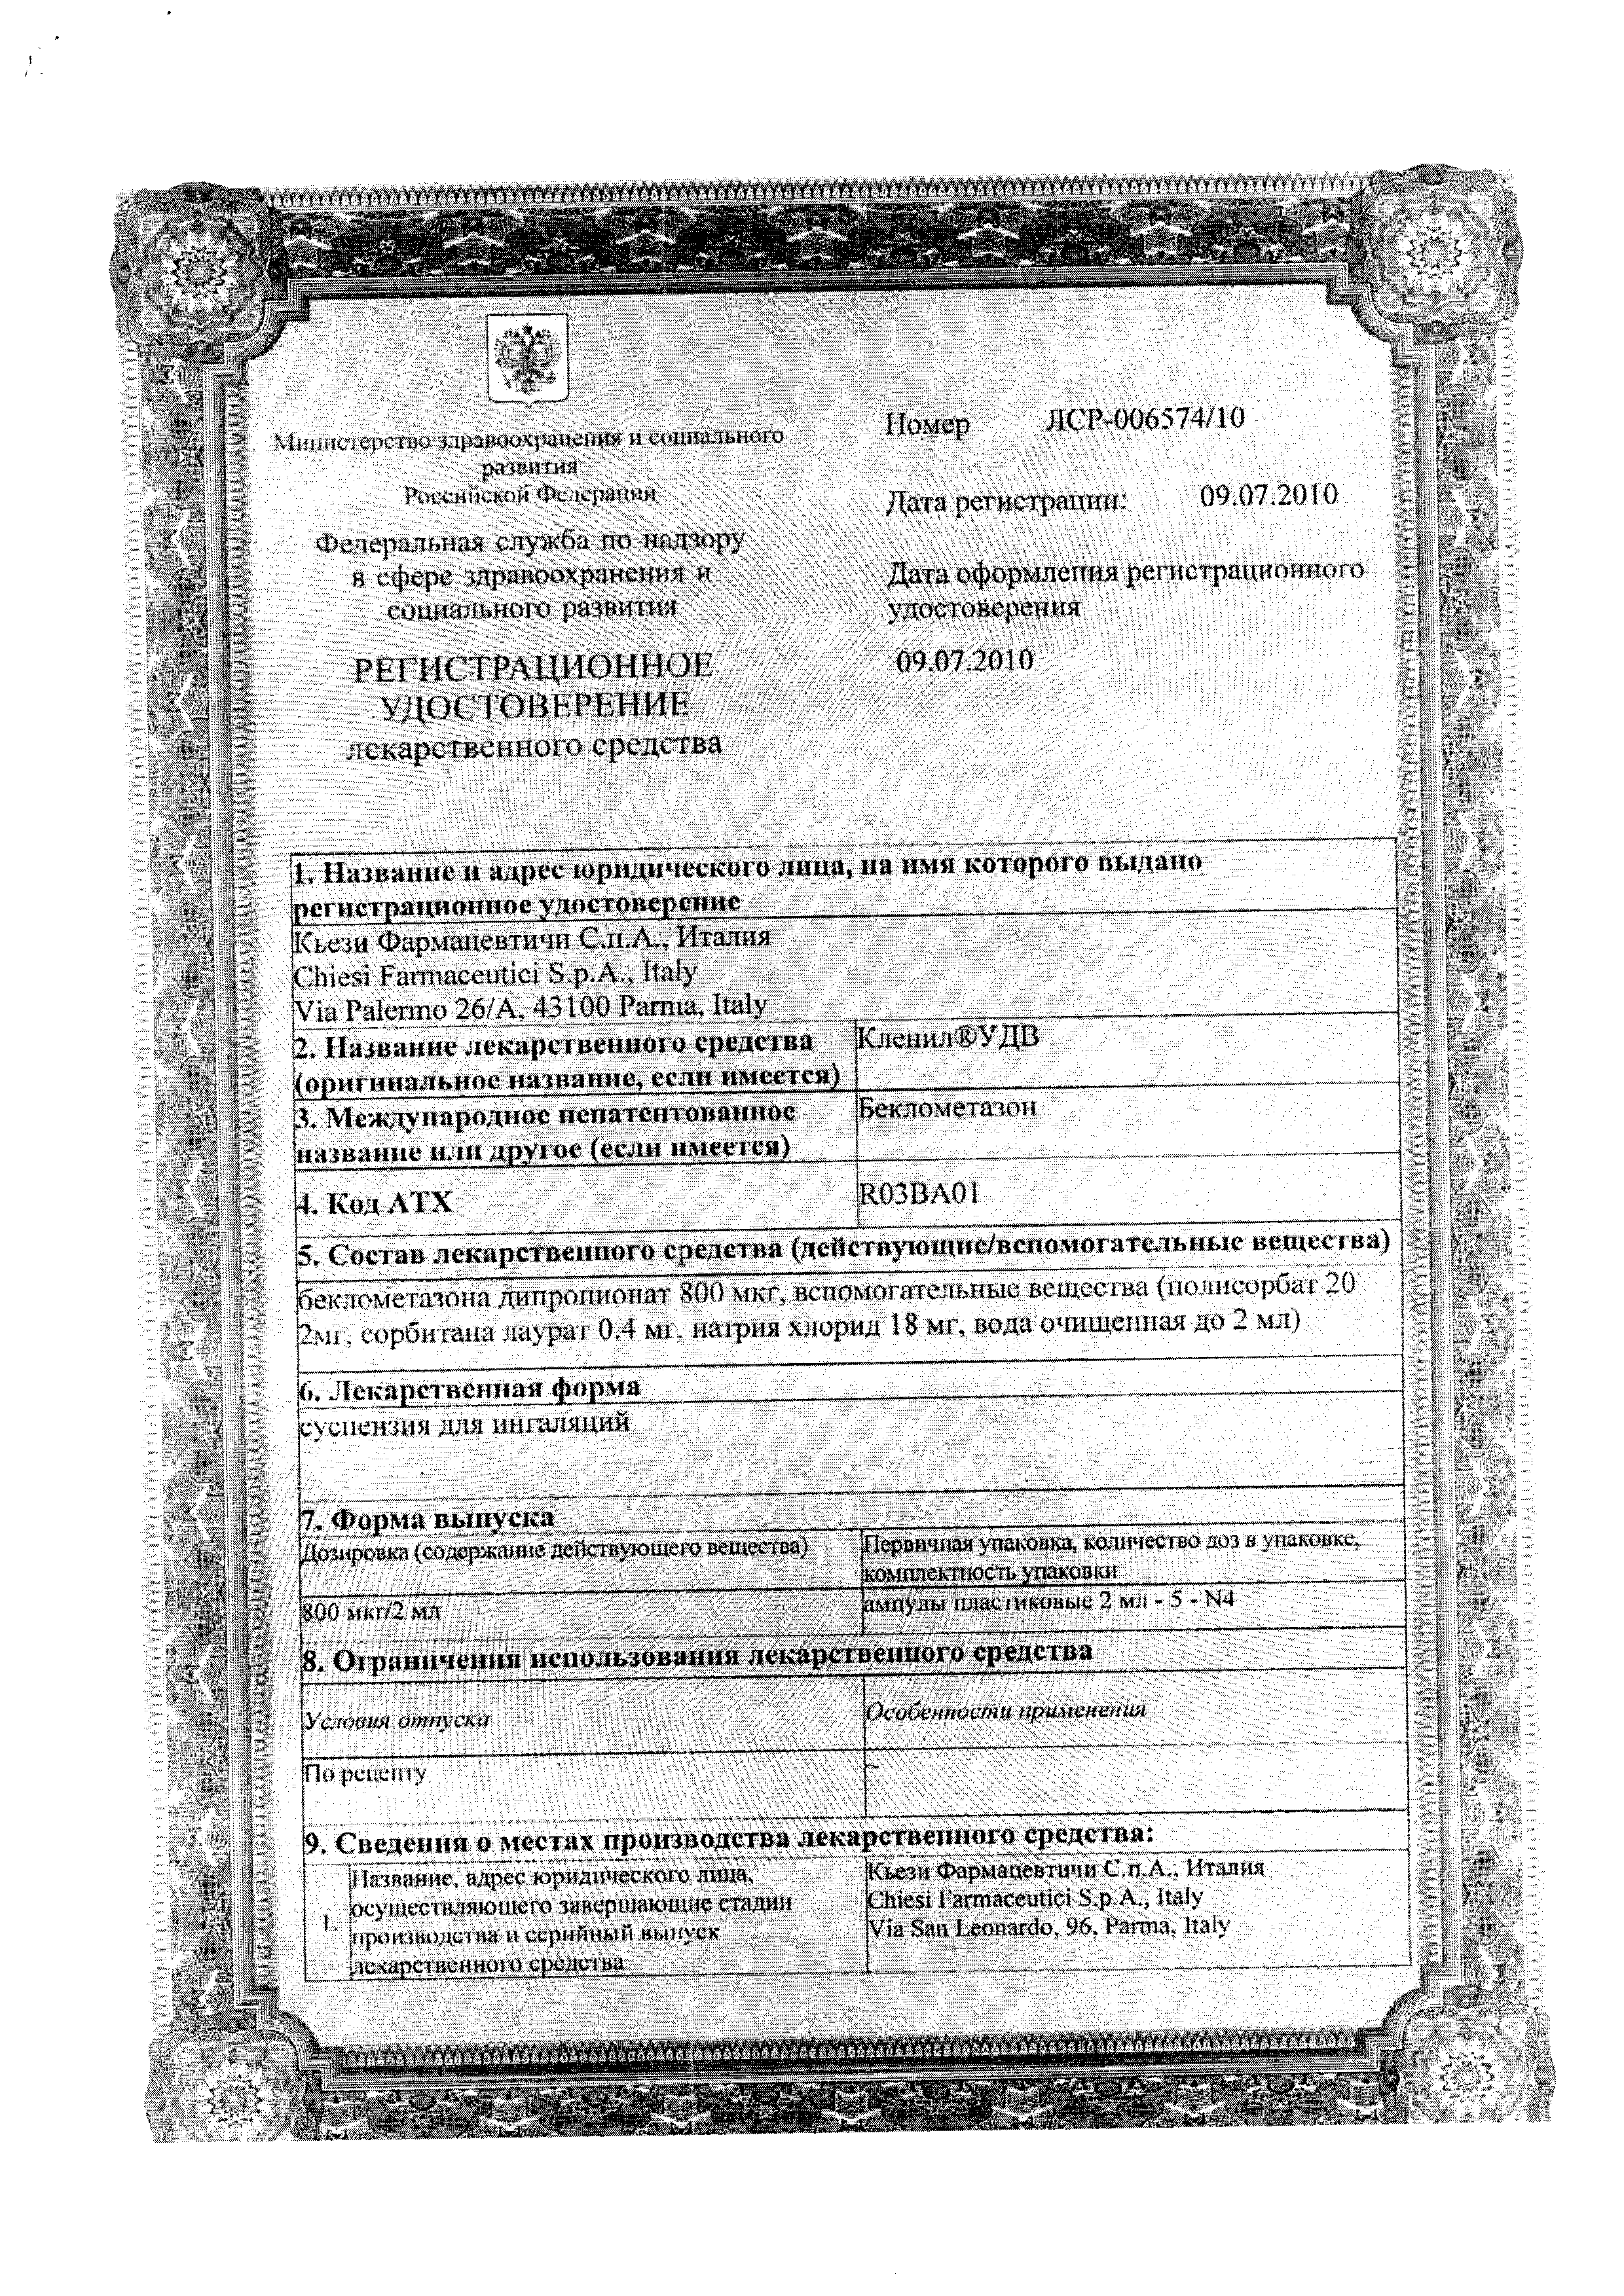 Кленил УДВ сертификат